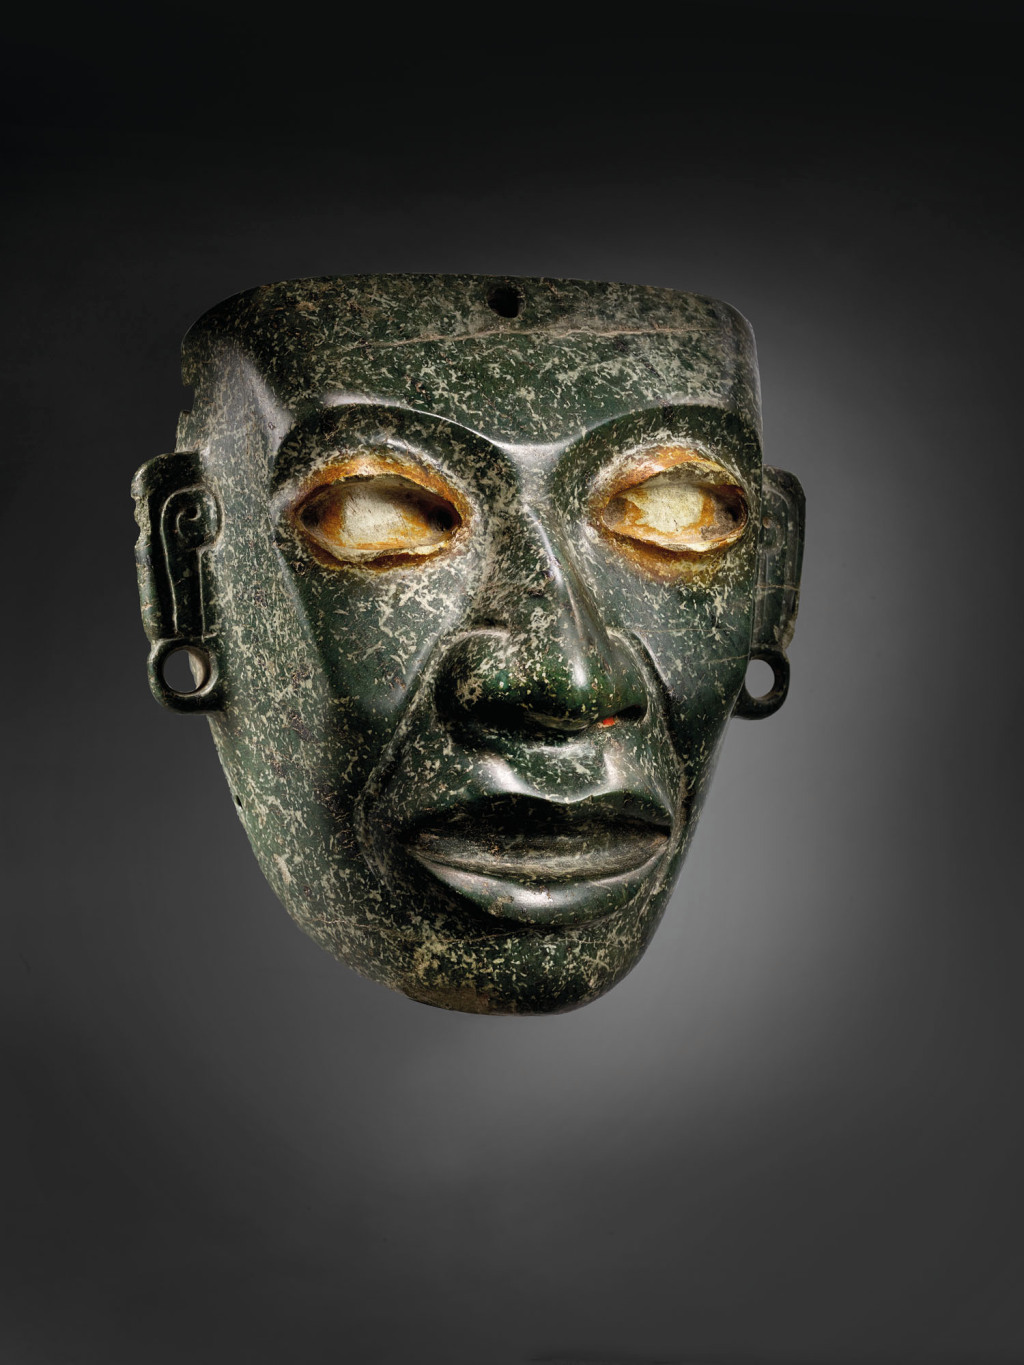 Mexico Files Legal Claim Over Pre-Columbian Art at Christie’s – ARTnews.com